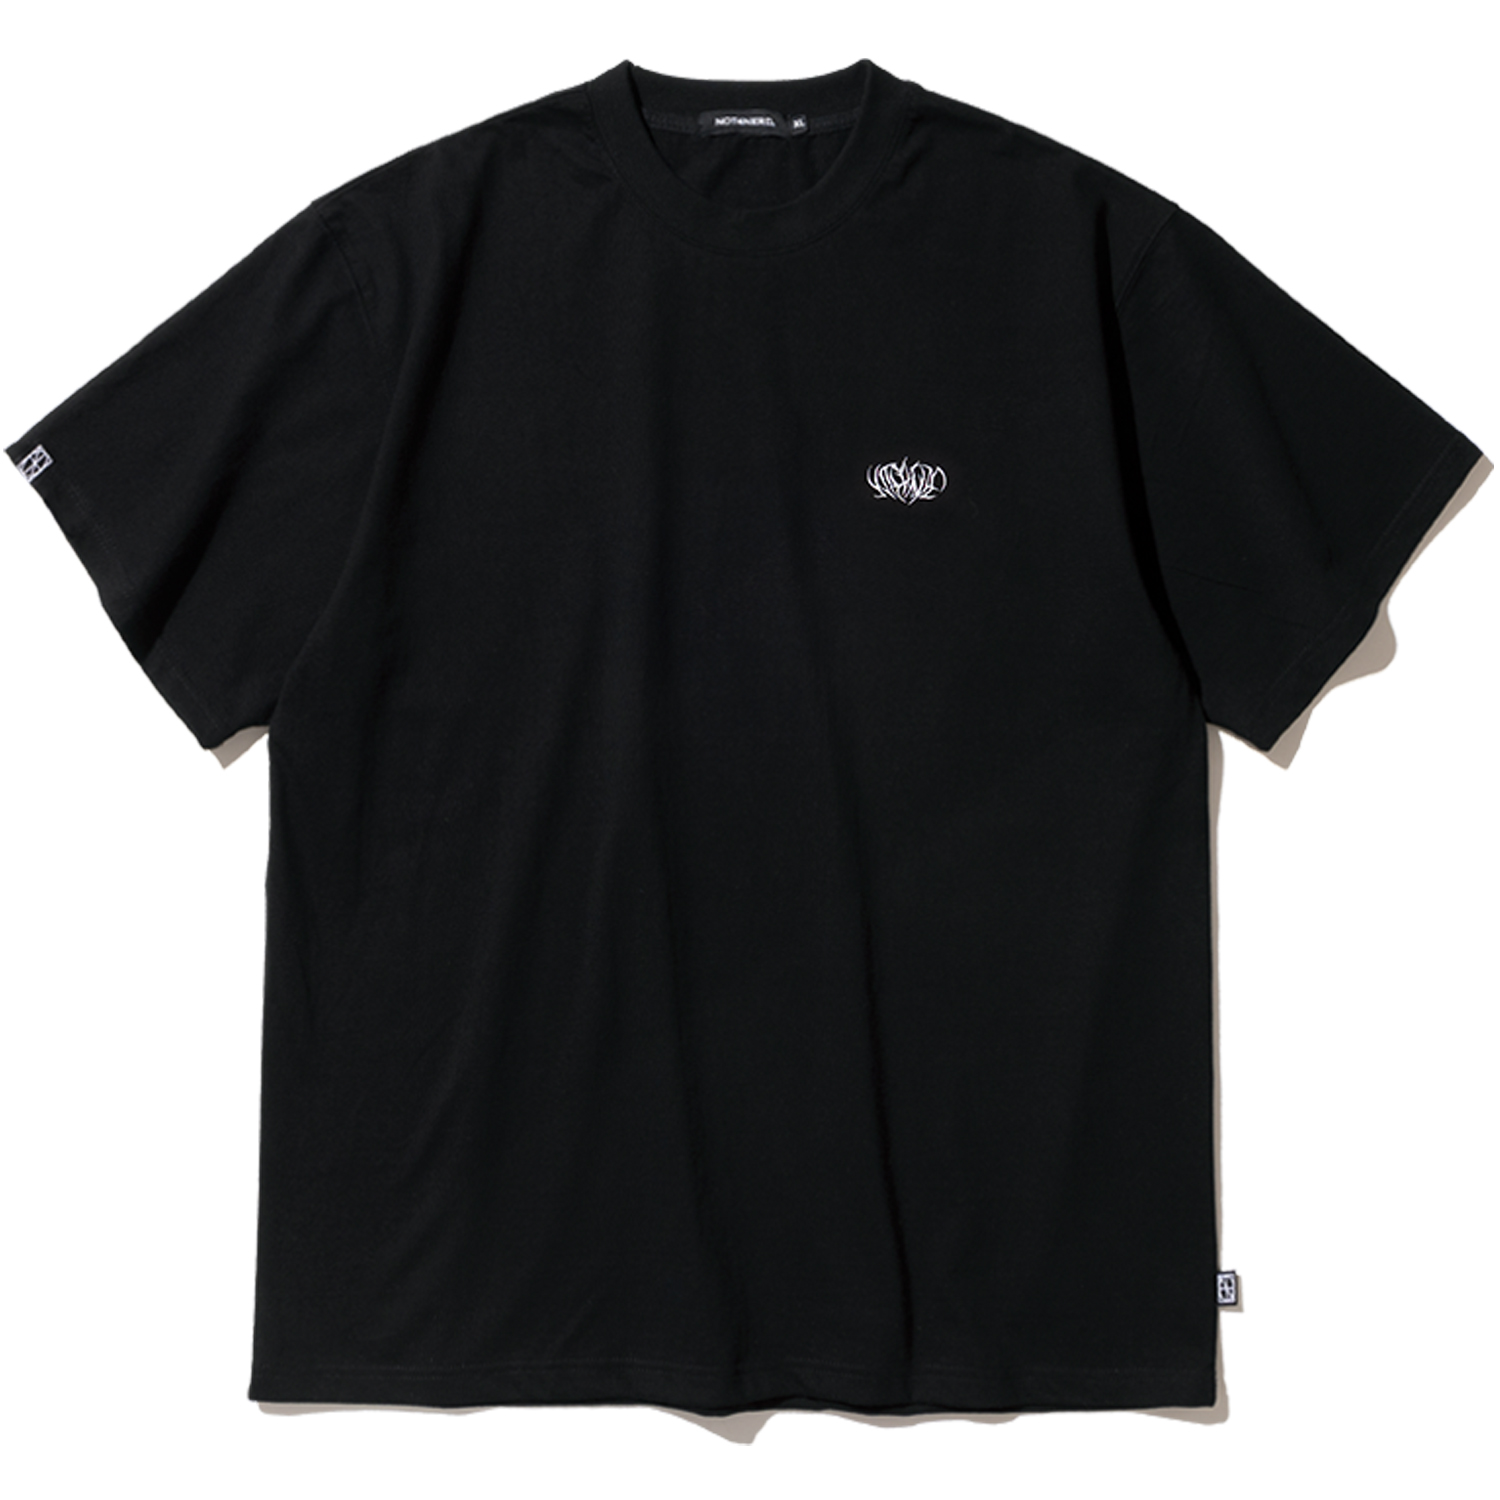 Metal N4ND Logo T-Shirts - Black,NOT4NERD